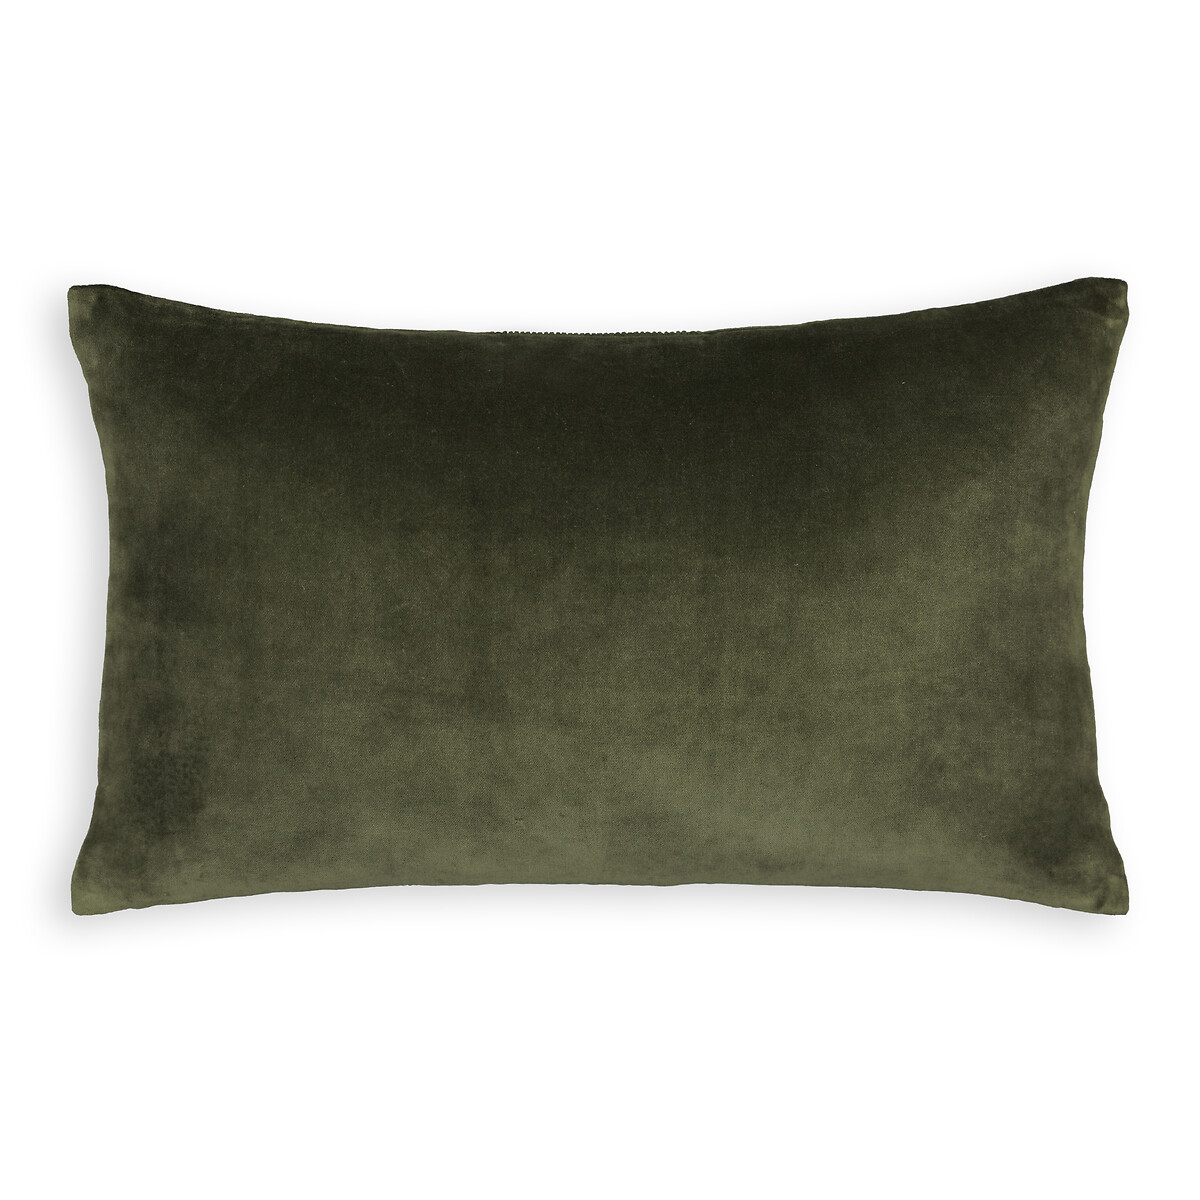 Чехол На подушку из велюра прямоугольный Brimo 50 x 30 см зеленый LaRedoute, размер 50 x 30 см - фото 2